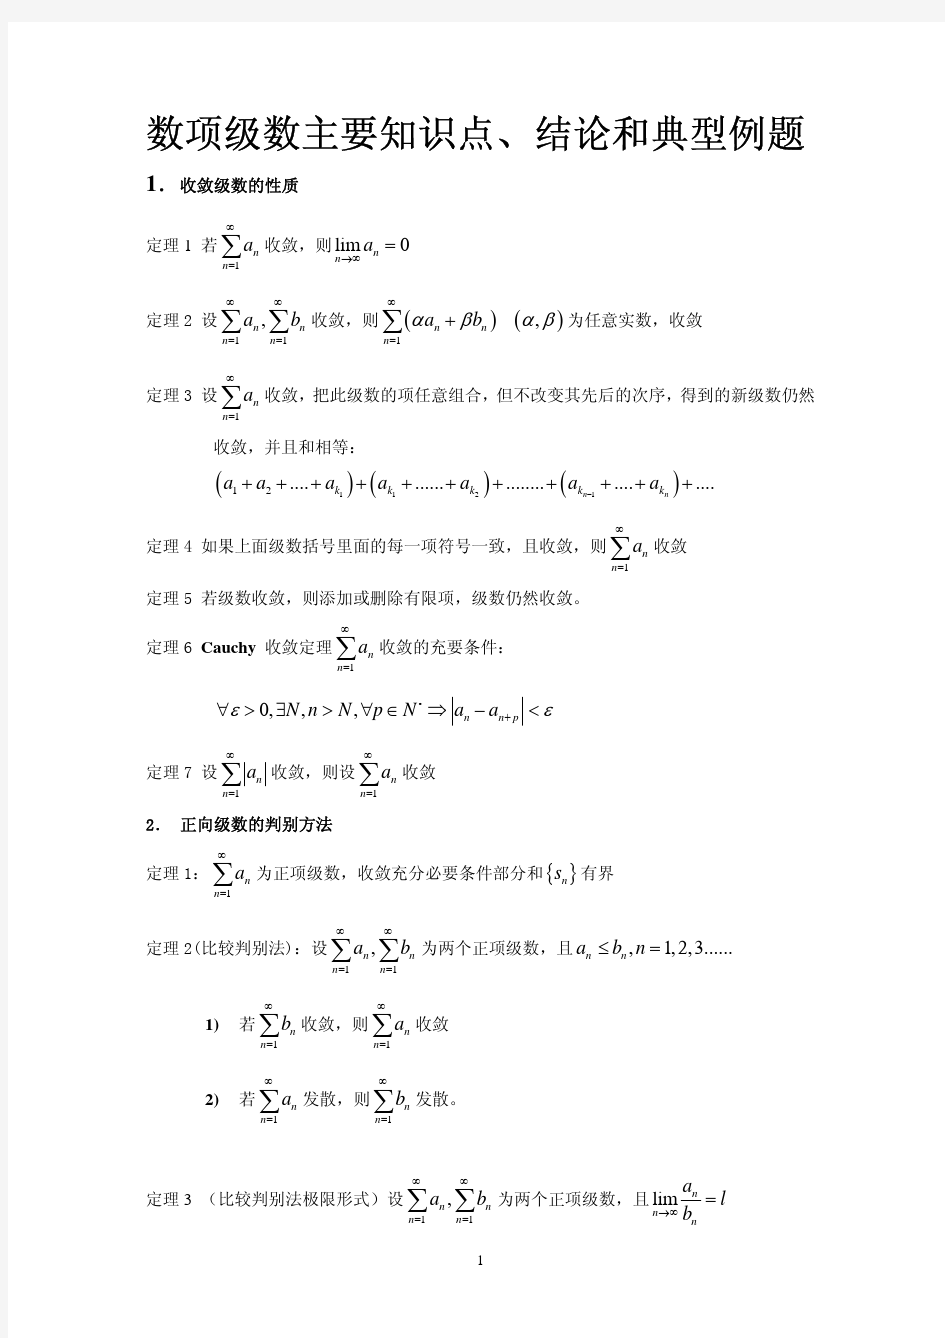 数学分析 第九章_数项级数复习